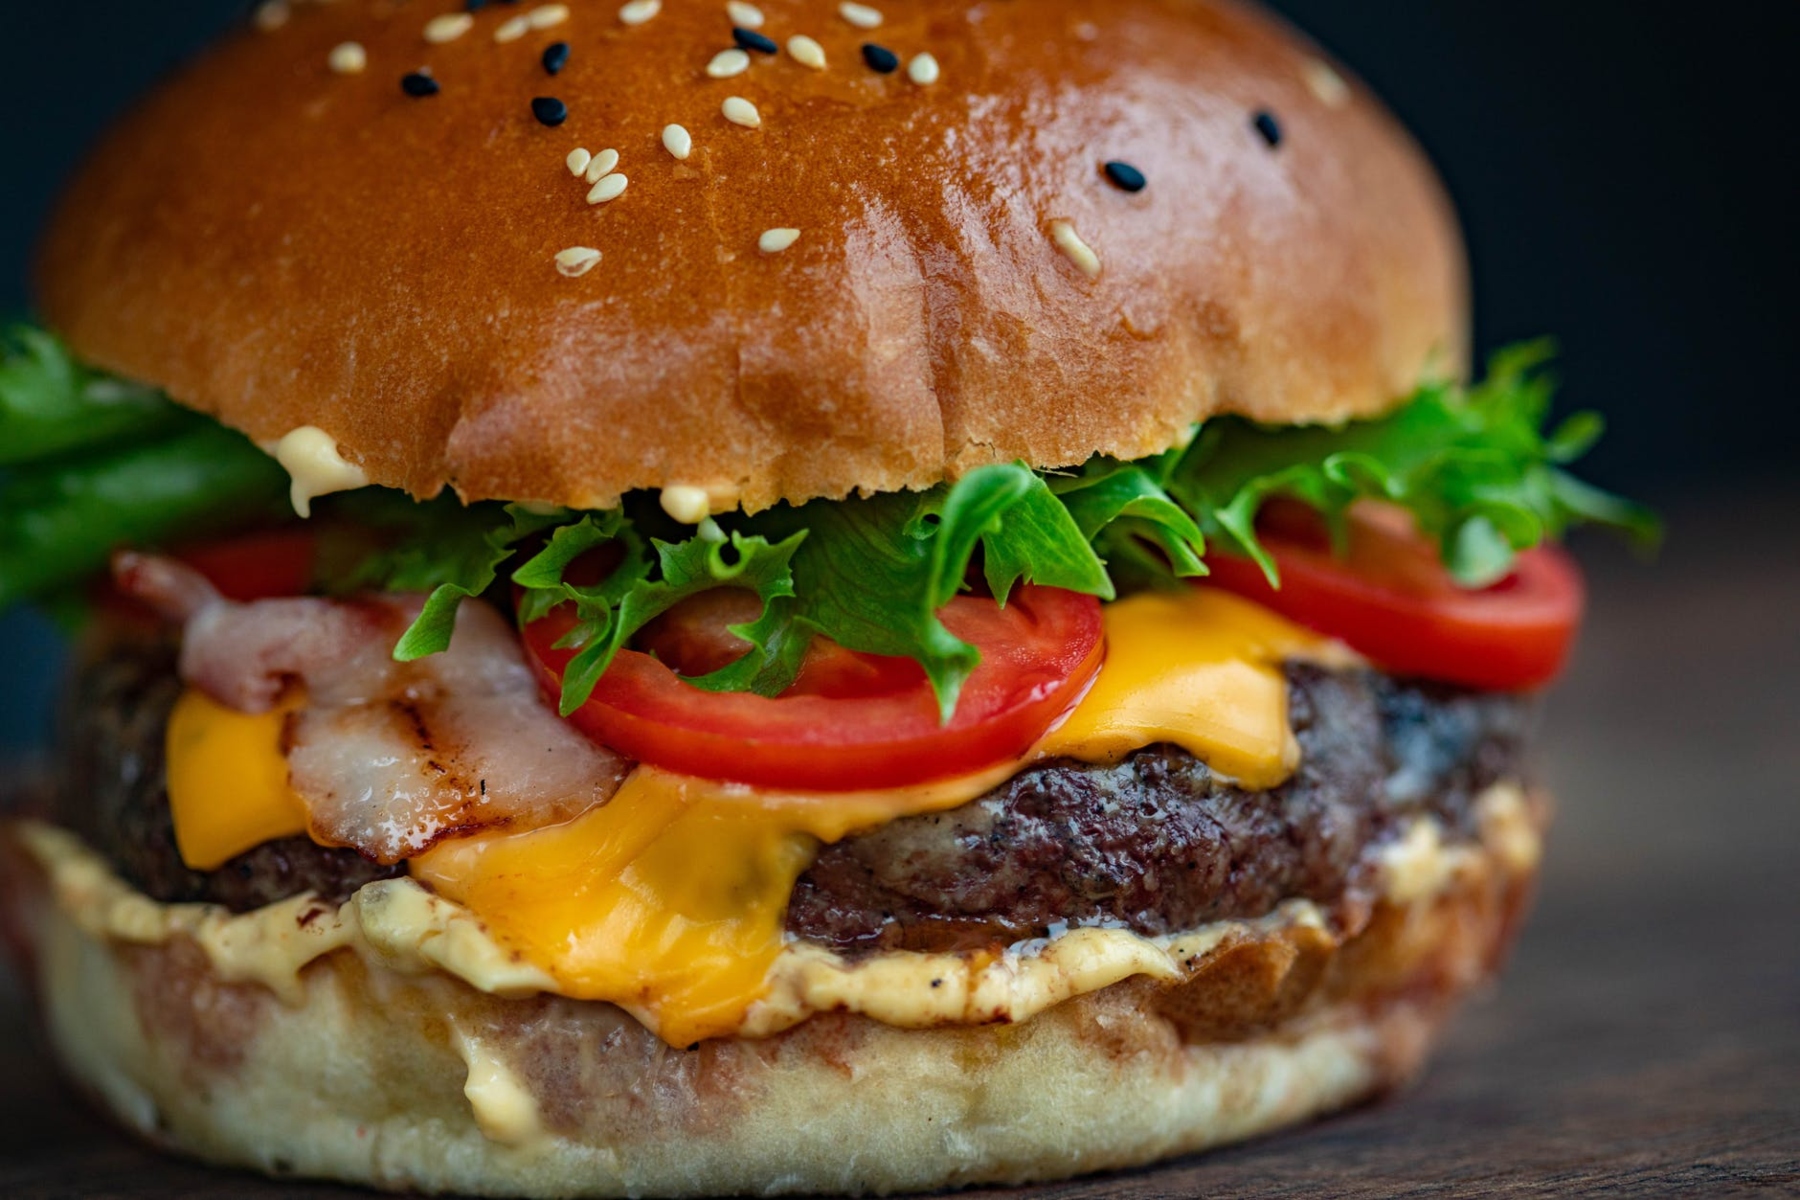 Άσθμα φαγητό: Πώς τα burgers στο μεσημεριανό ίσως επιδεινώσουν το άσθμα σας μέχρι το απόγευμα